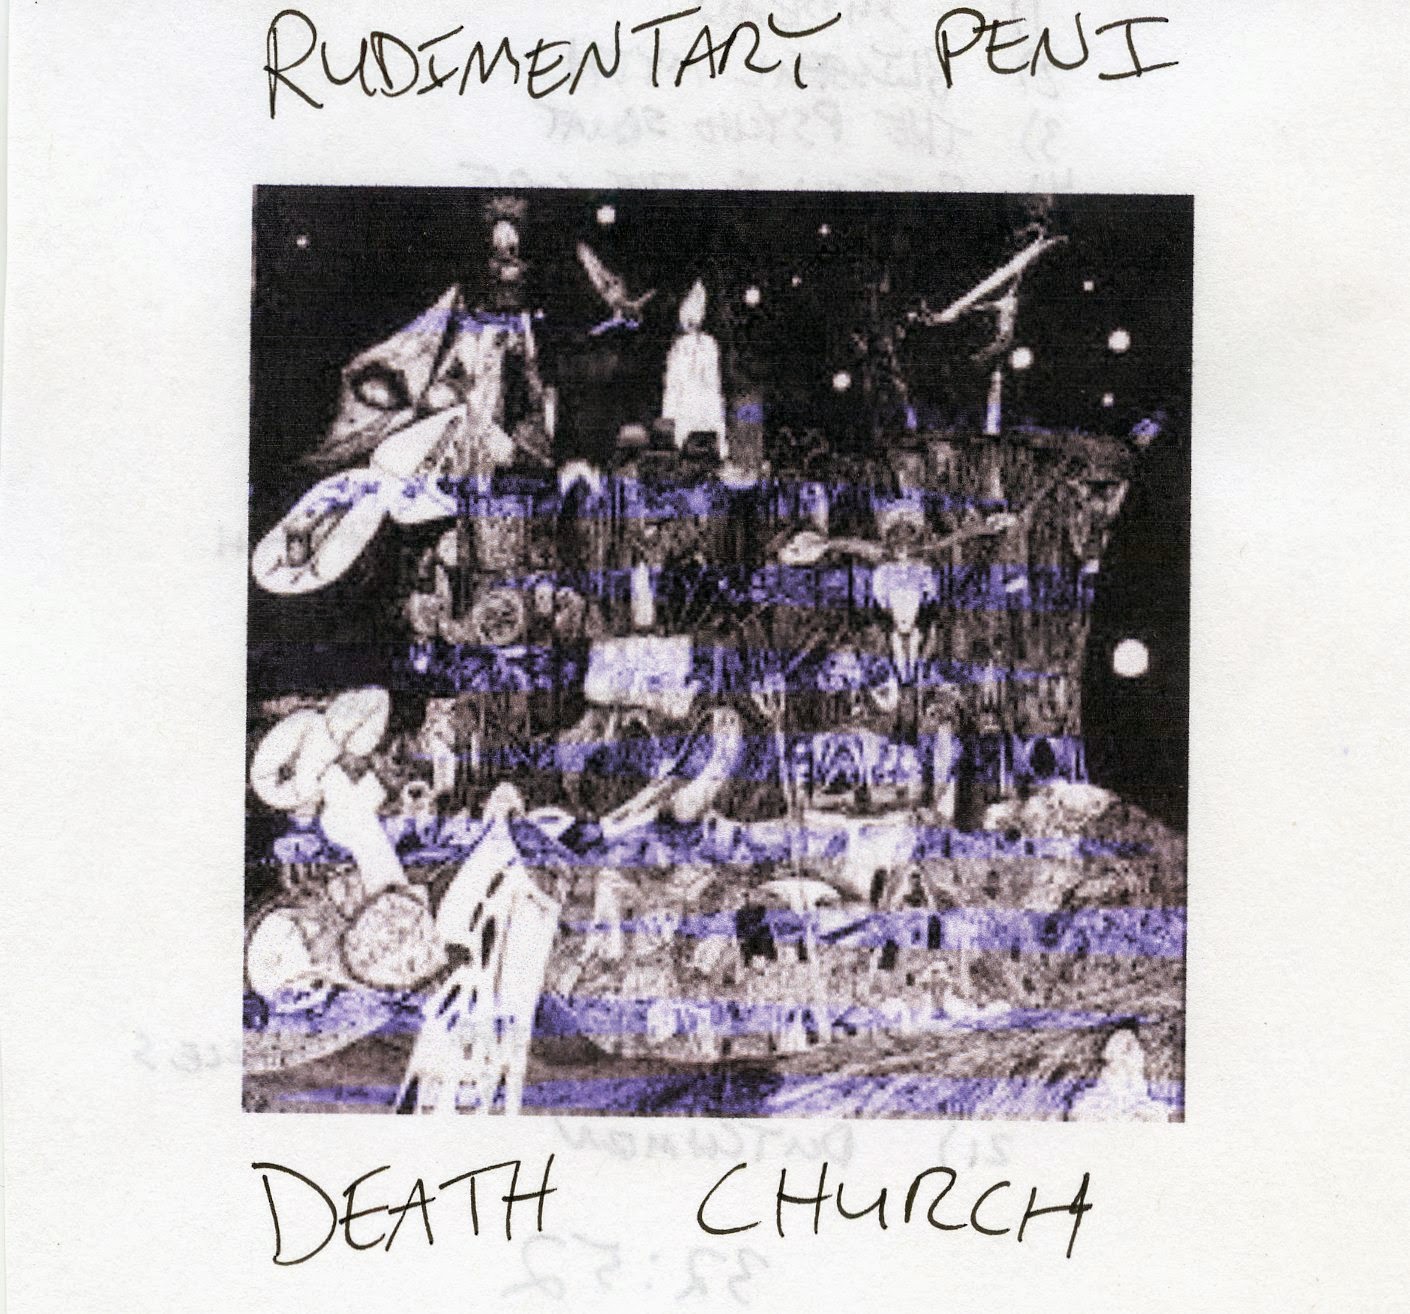 Rudimentary Peni - Death Church Vinyl, LP, Album at Discogs